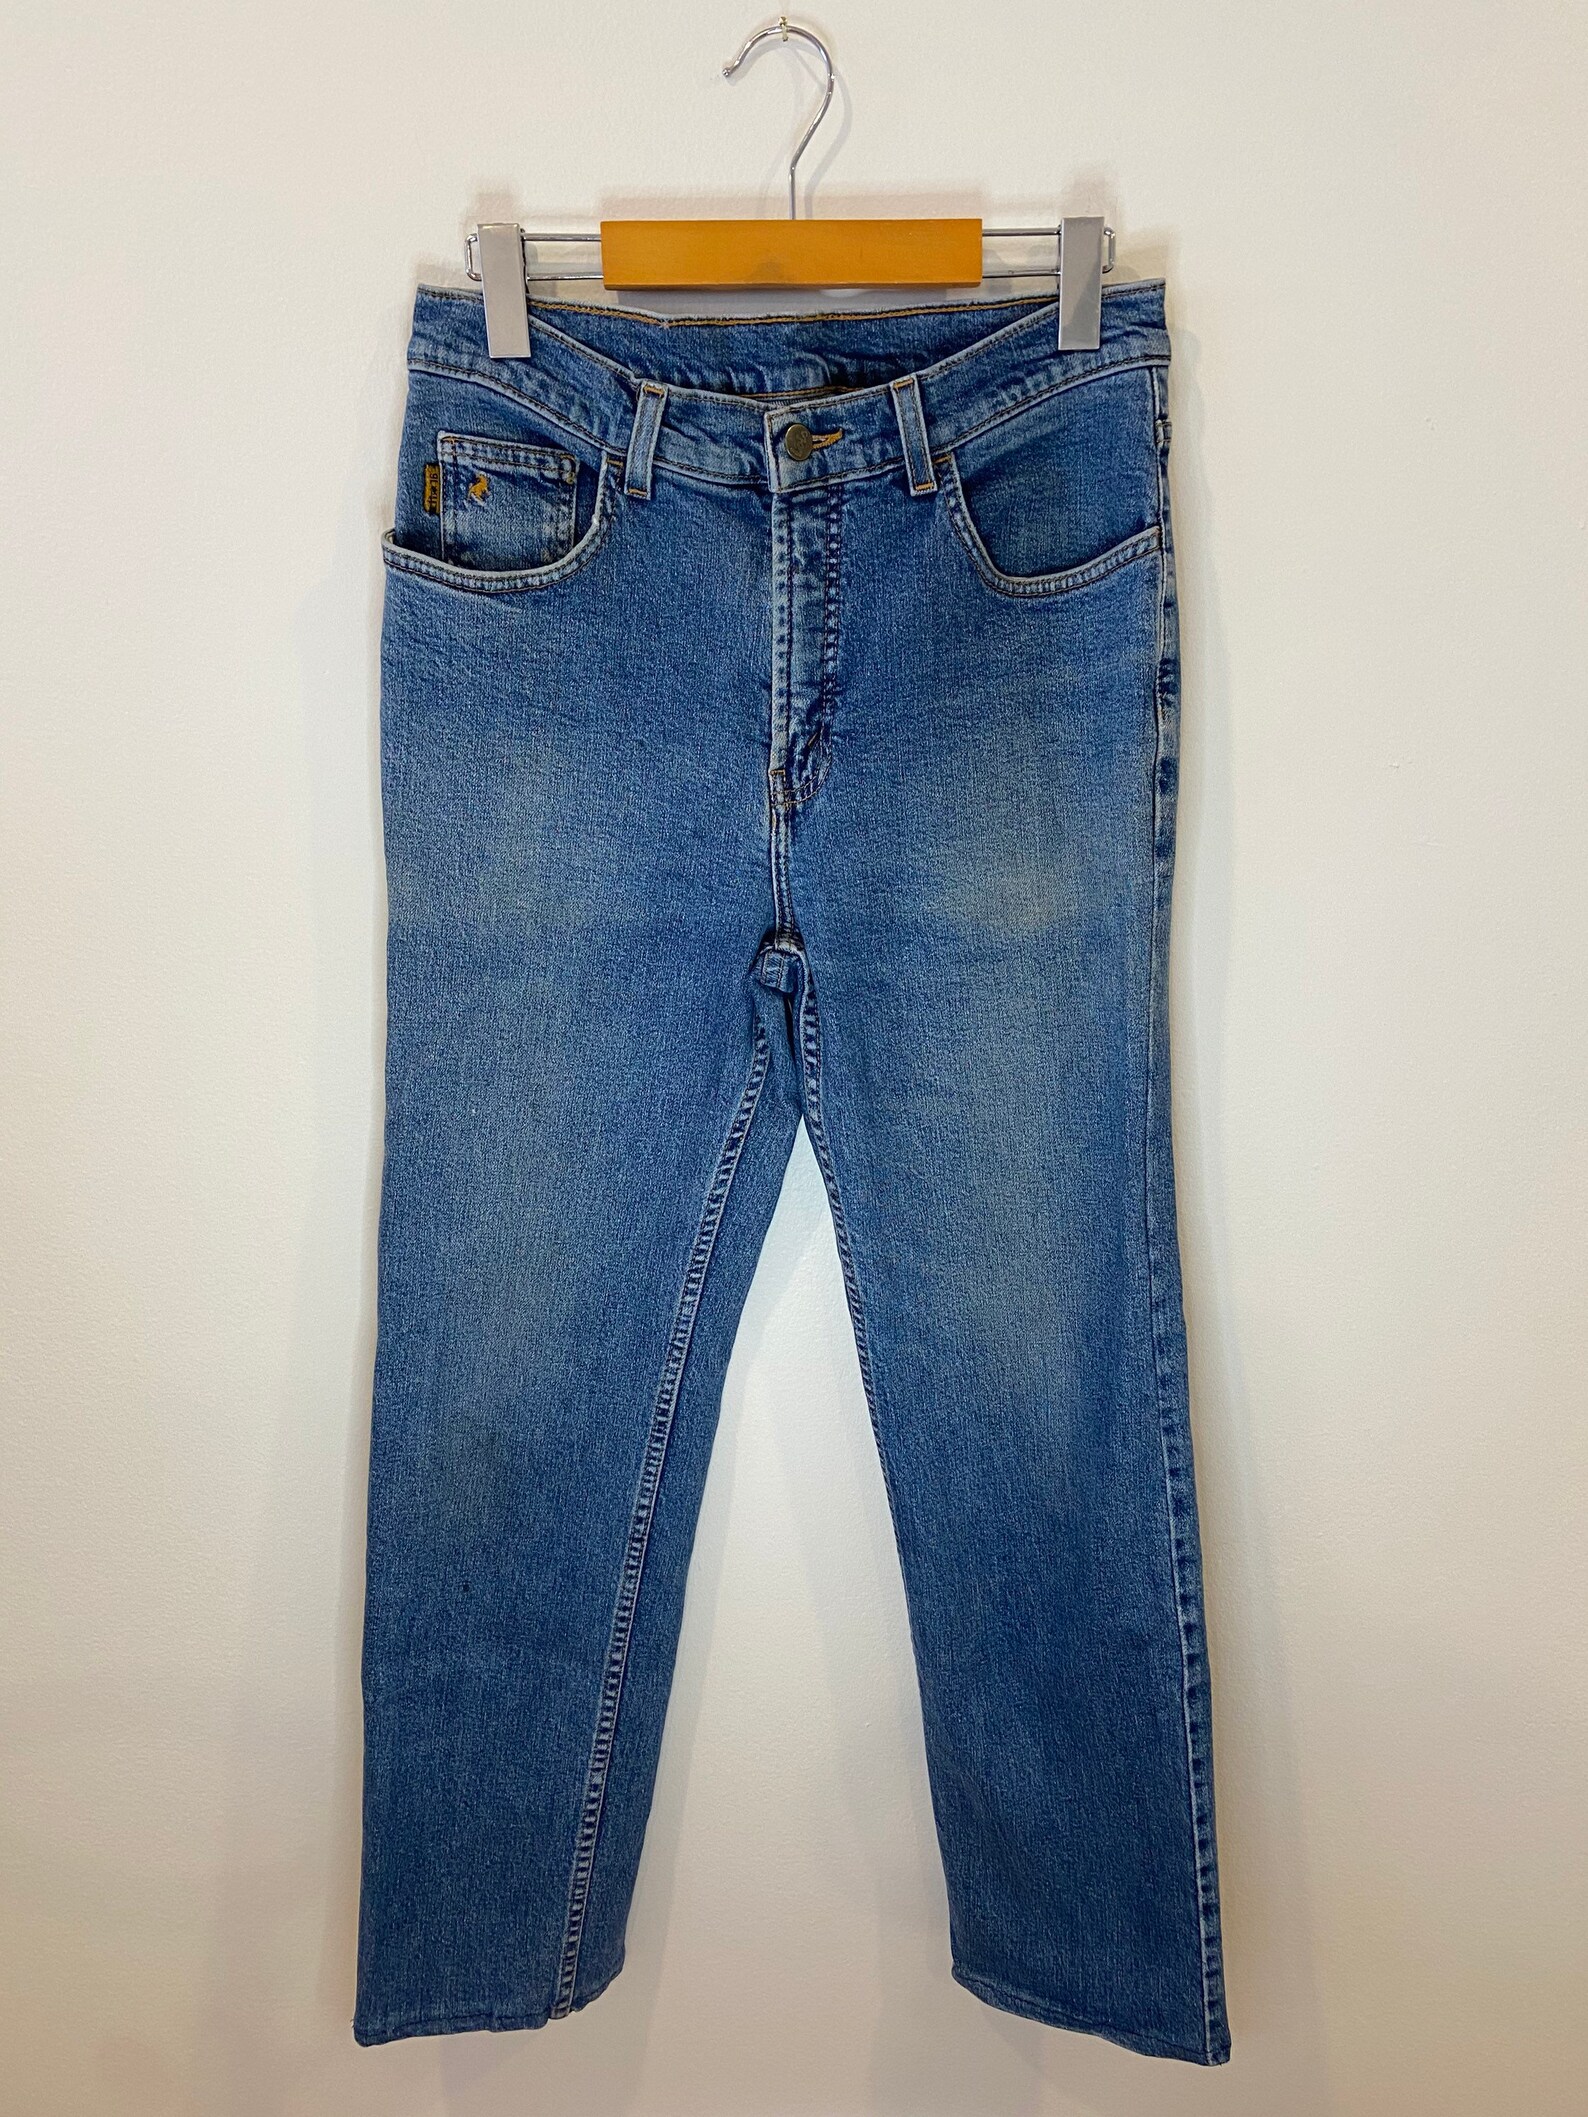 Vintage Lois jeans denim pants blue wash jeans 90s denim | Etsy